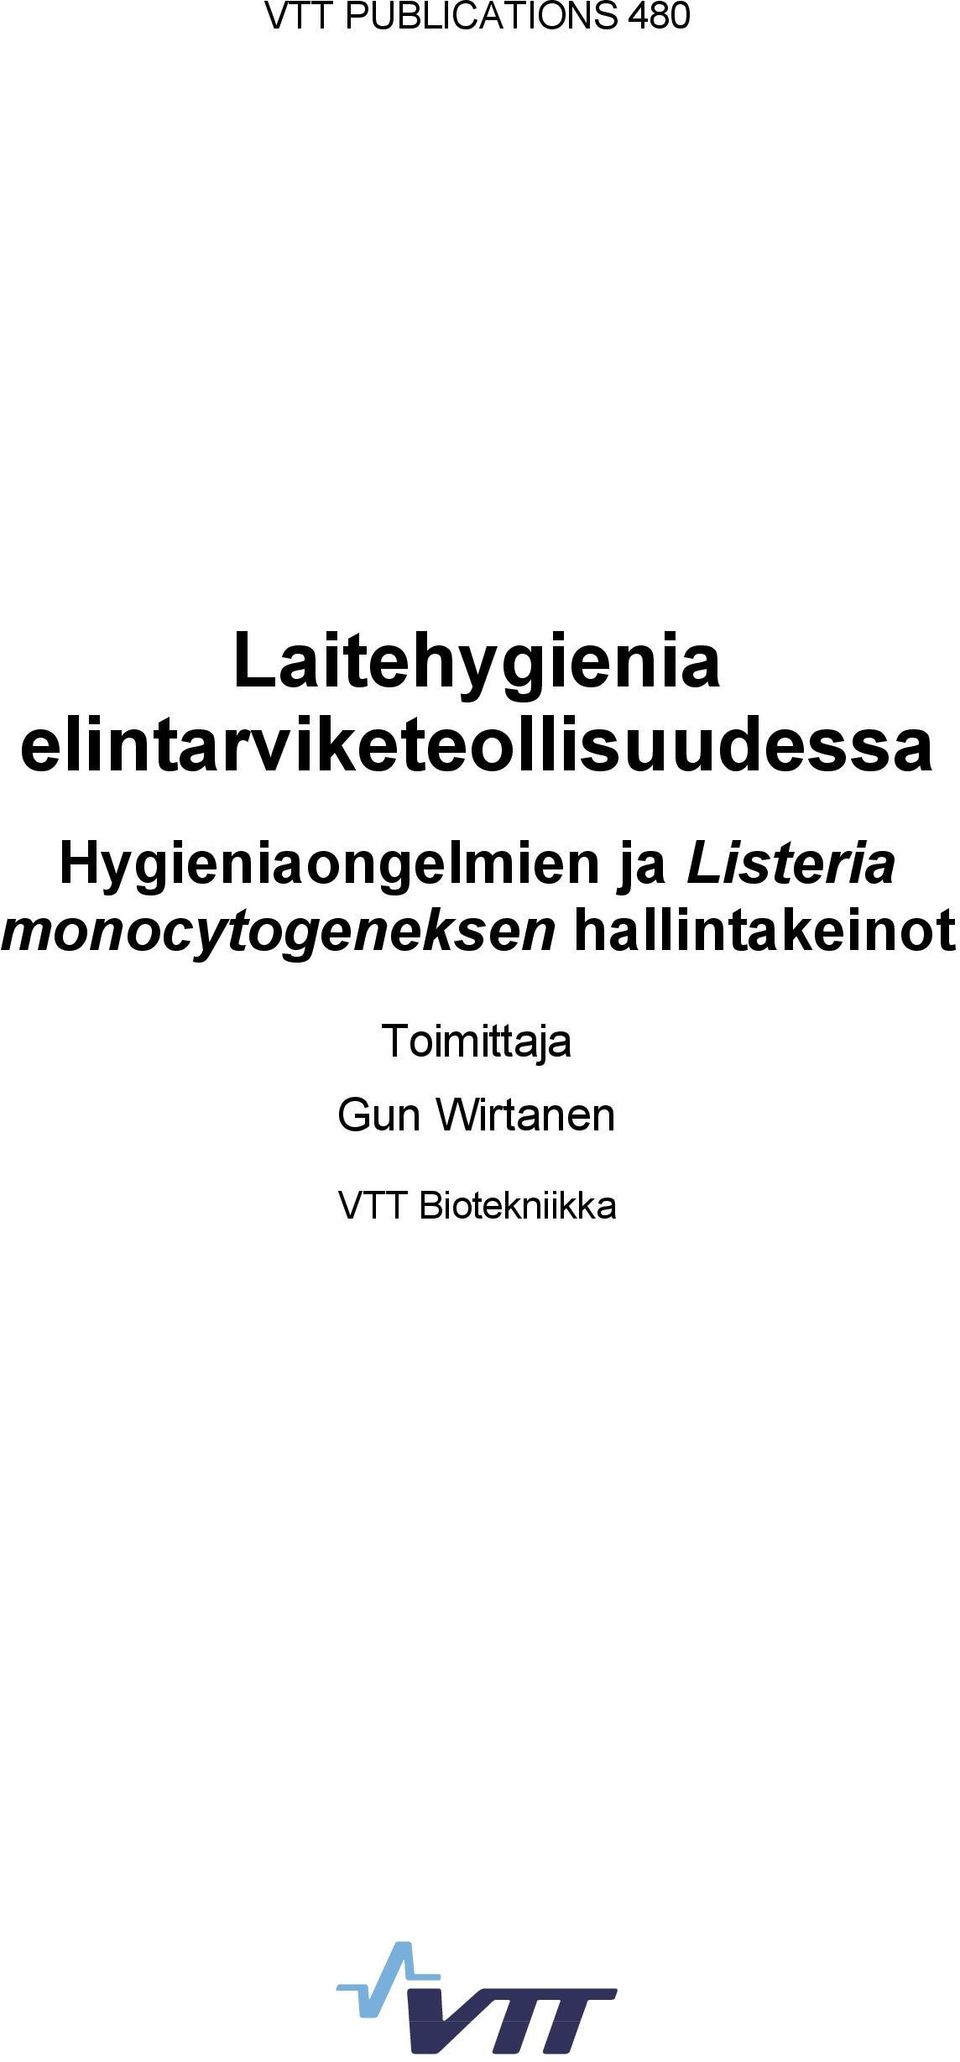 Hygieniaongelmien ja Listeria